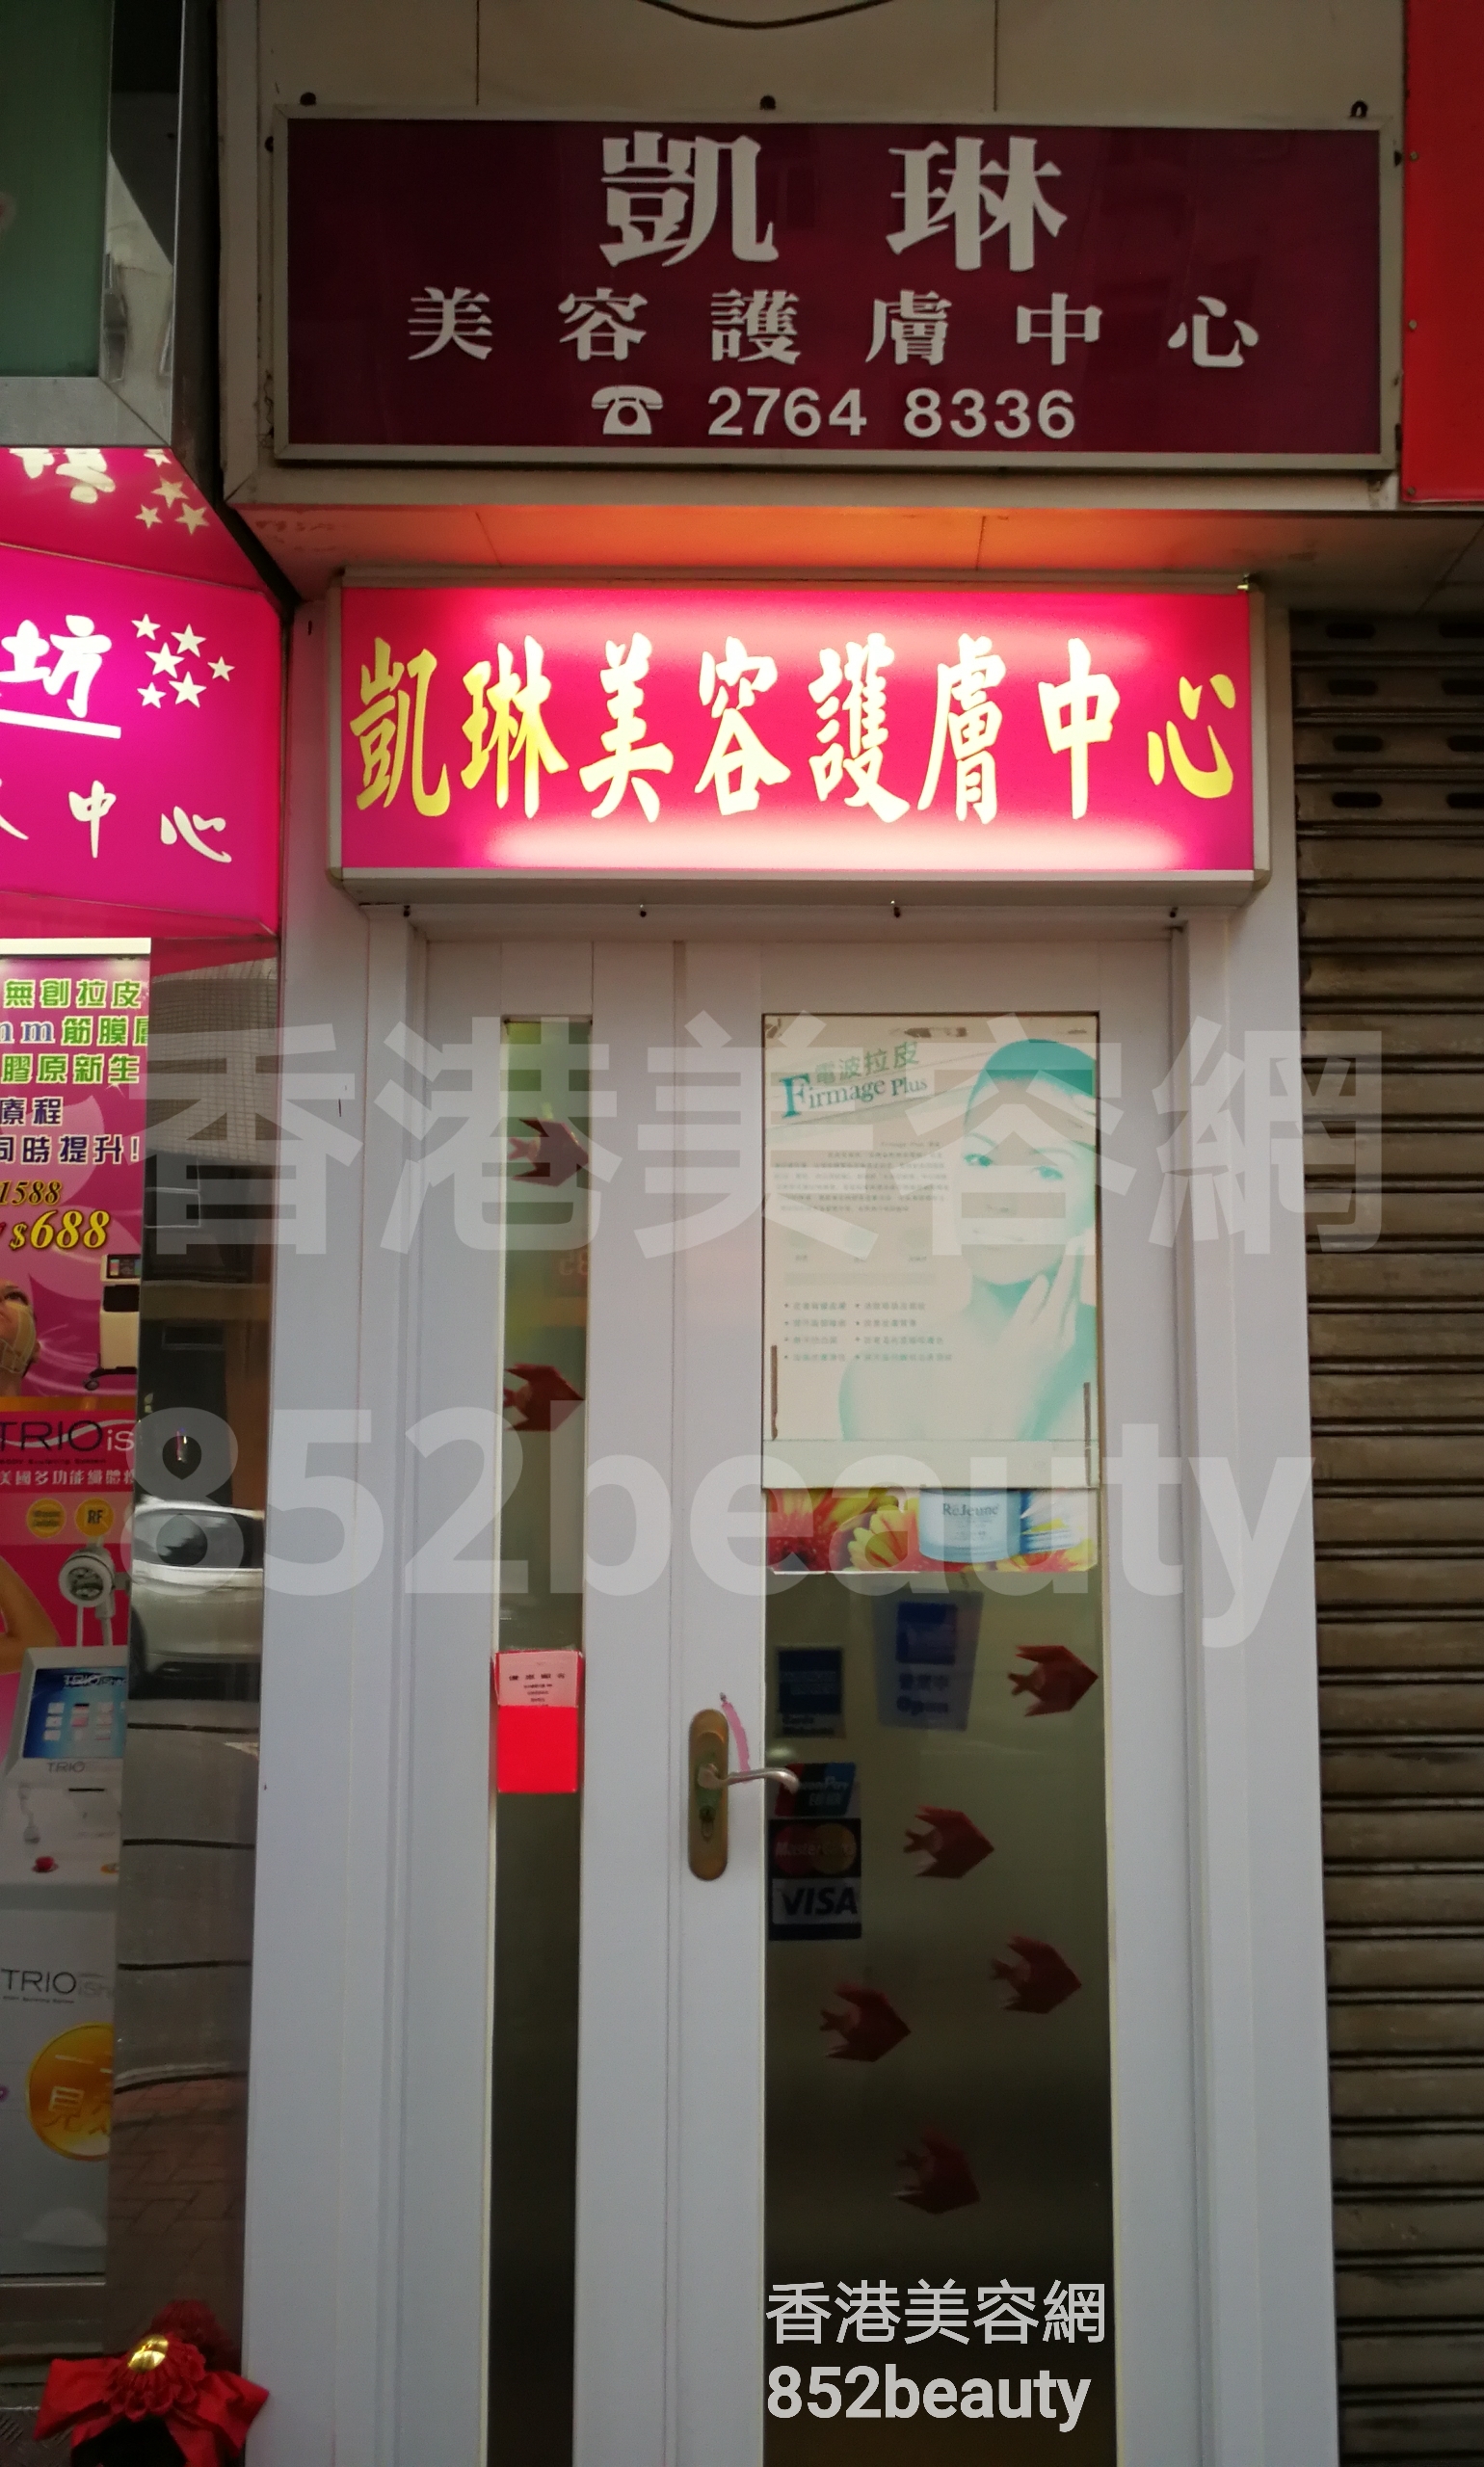 香港美容網 Hong Kong Beauty Salon 美容院 / 美容師: 凱琳美容護膚中心